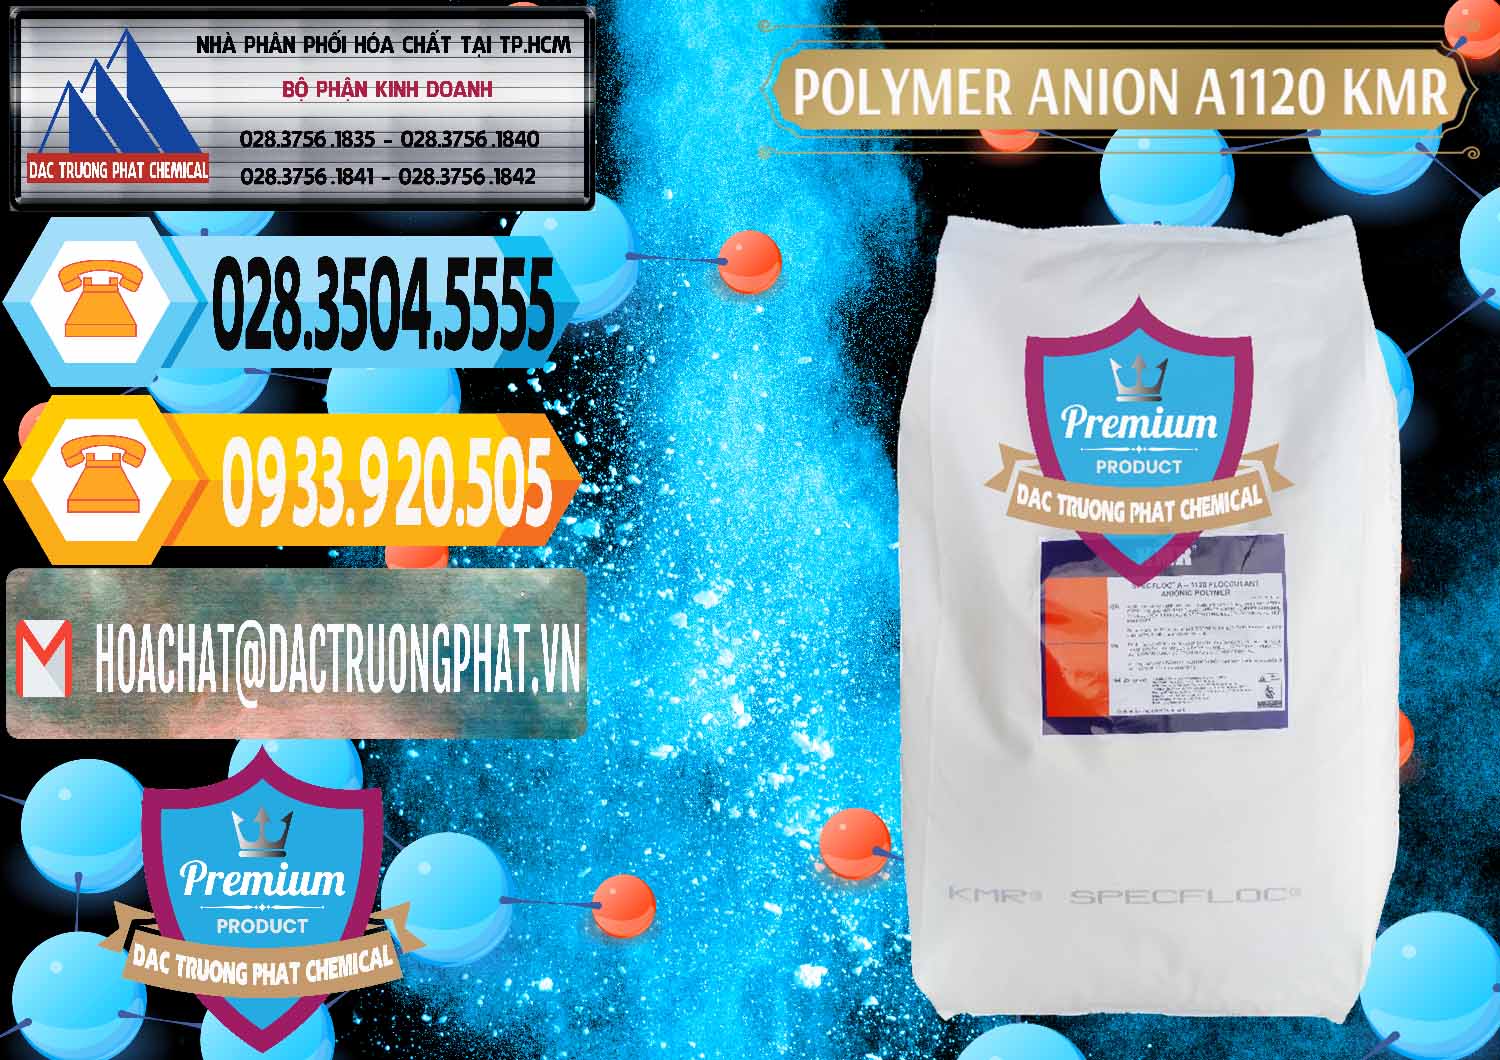 Công ty phân phối - bán Polymer Anion A1120 - KMR Anh Quốc England - 0119 - Công ty chuyên nhập khẩu _ cung cấp hóa chất tại TP.HCM - hoachattayrua.net